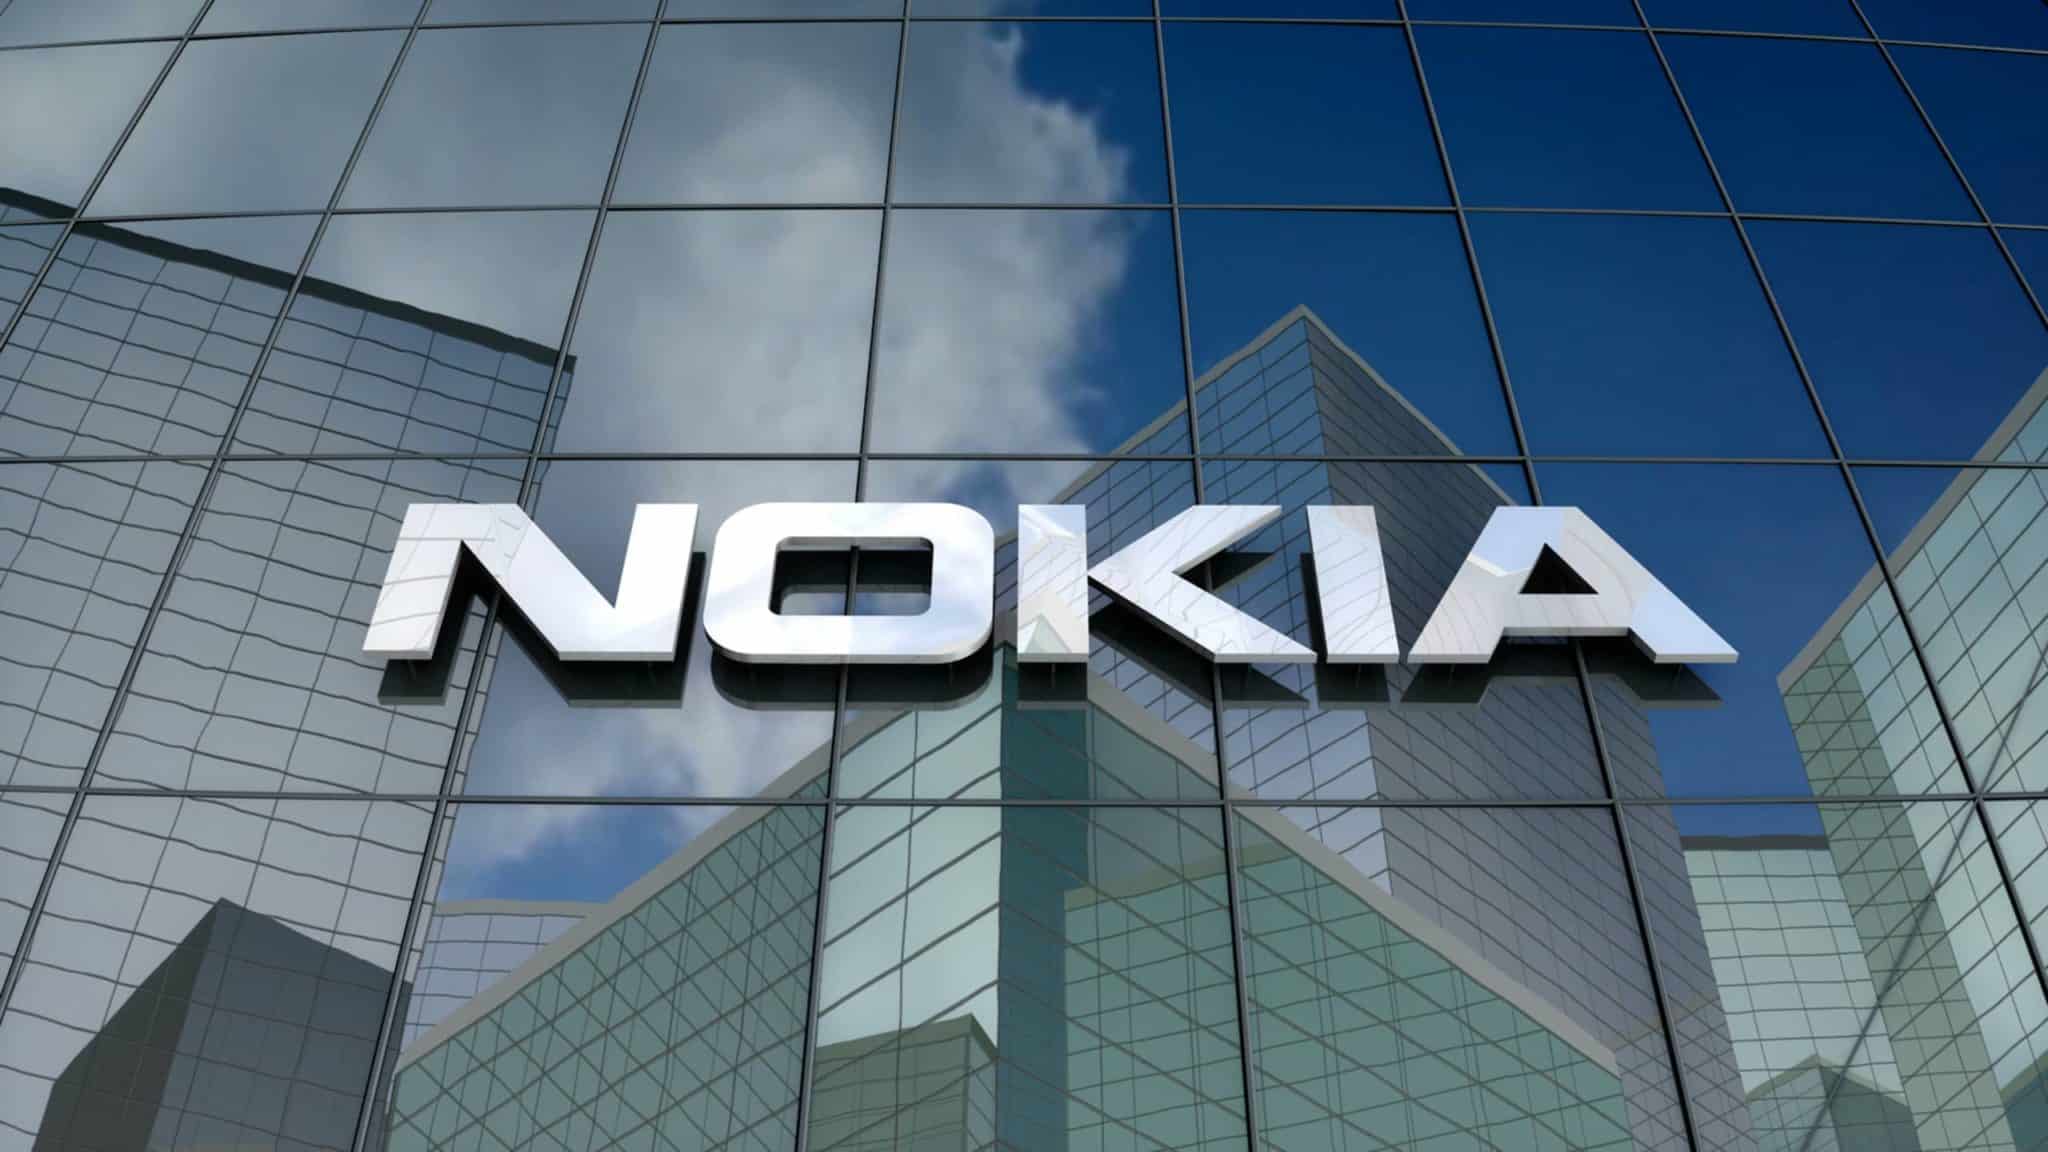 Nokia building logo